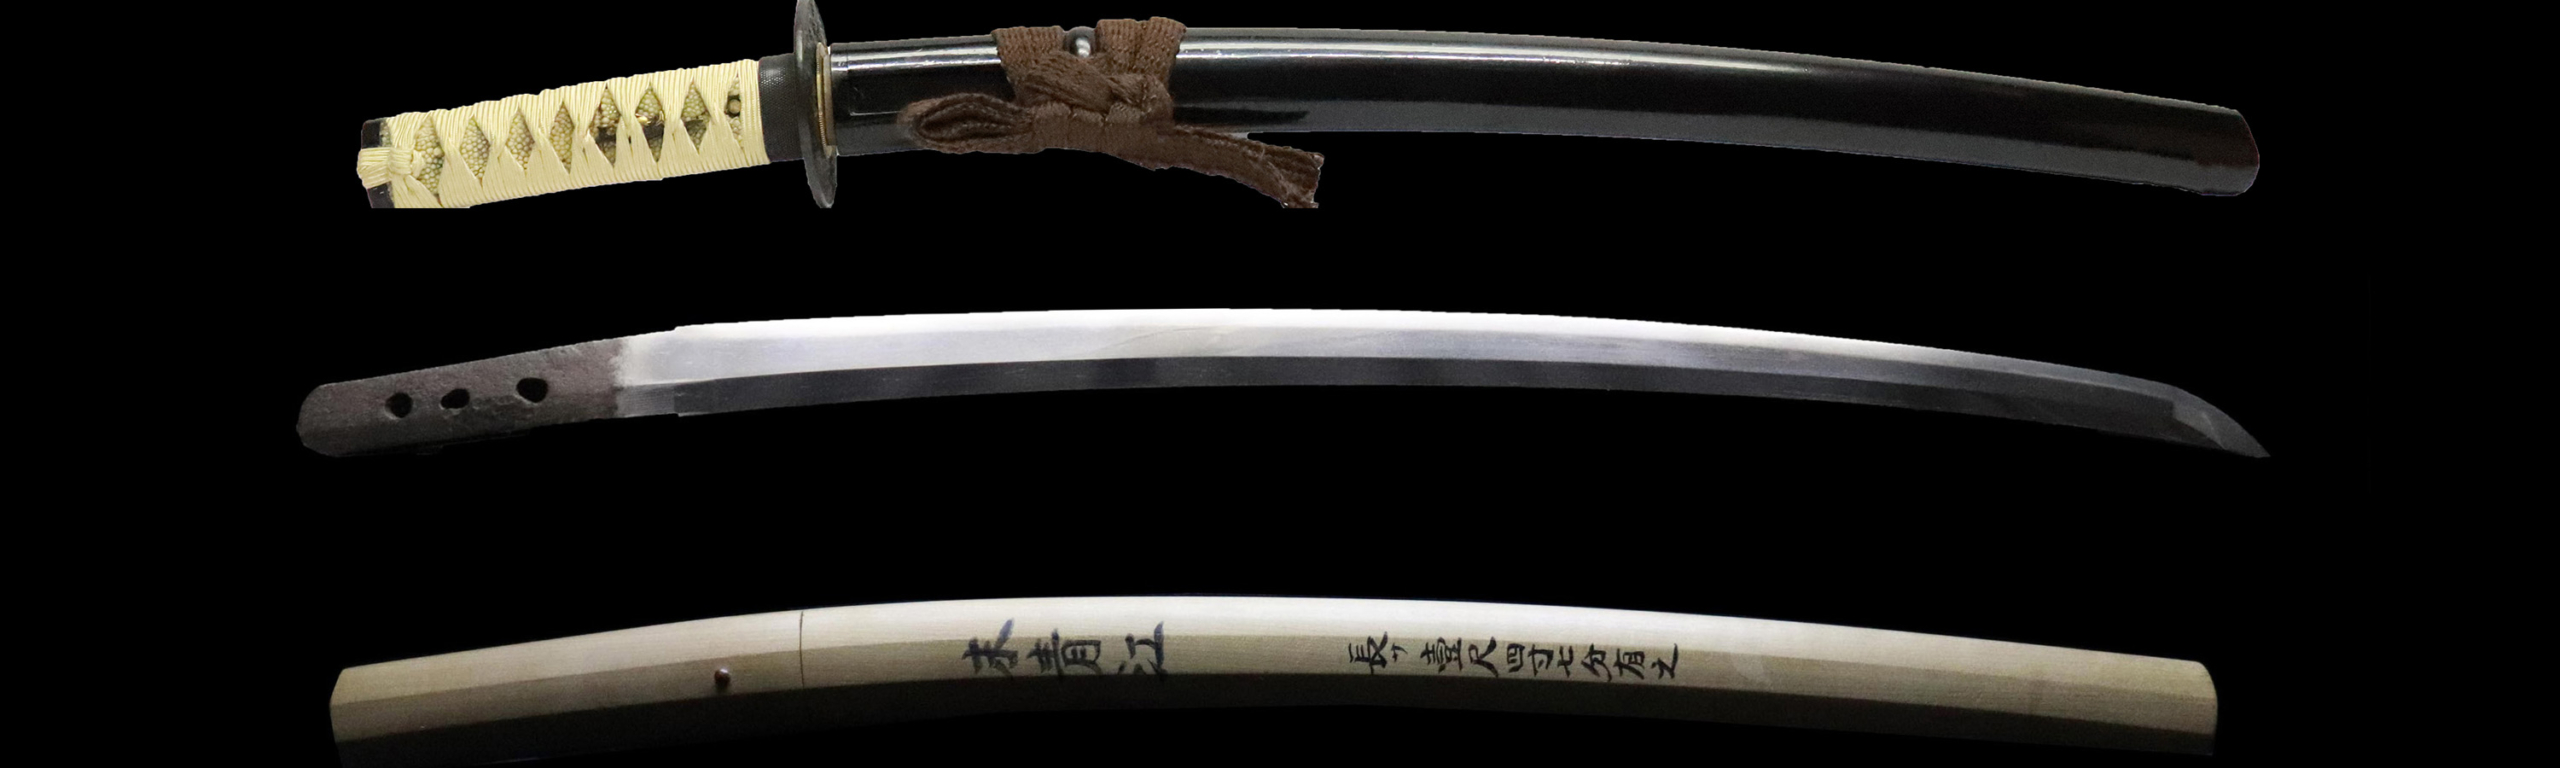 無銘(白鞘・拵)法華 脇差 / 保存刀剣 | 日本刀販売の「勇進堂」 | 刀剣 